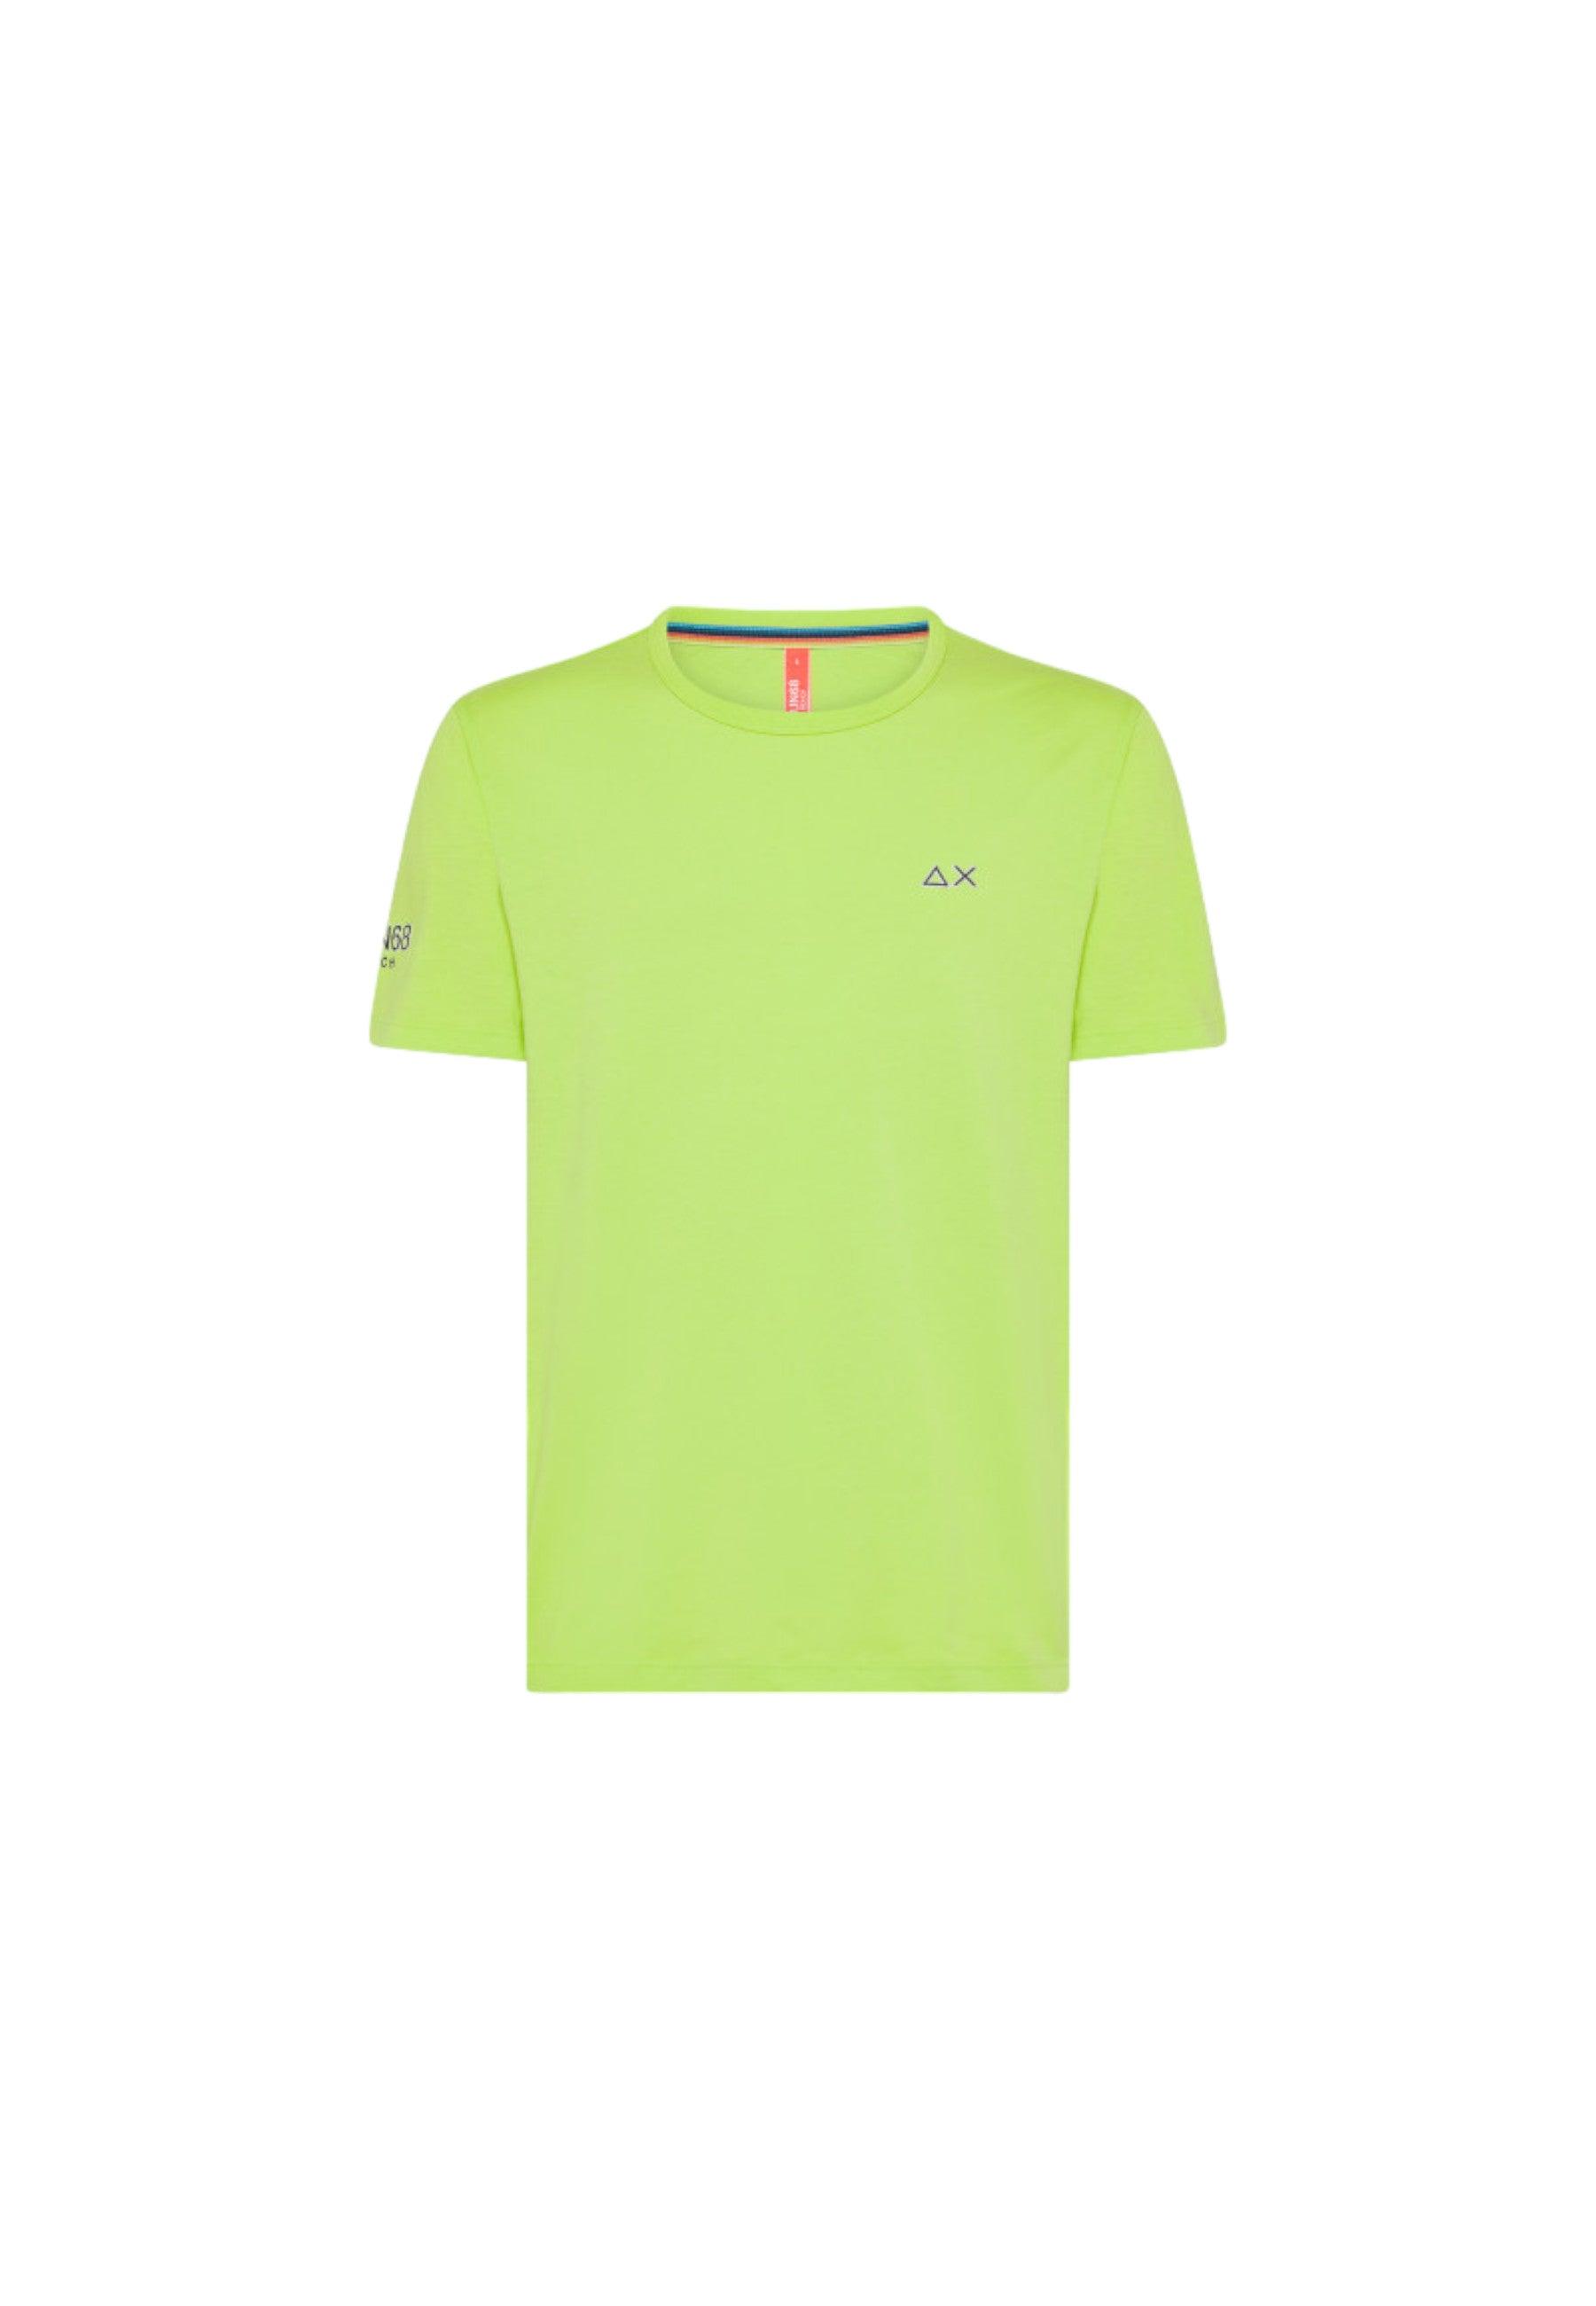 SUN68 Beachwear T-Shirt Maglietta Logo Lime Giallo T34140 - Sandrini Calzature e Abbigliamento